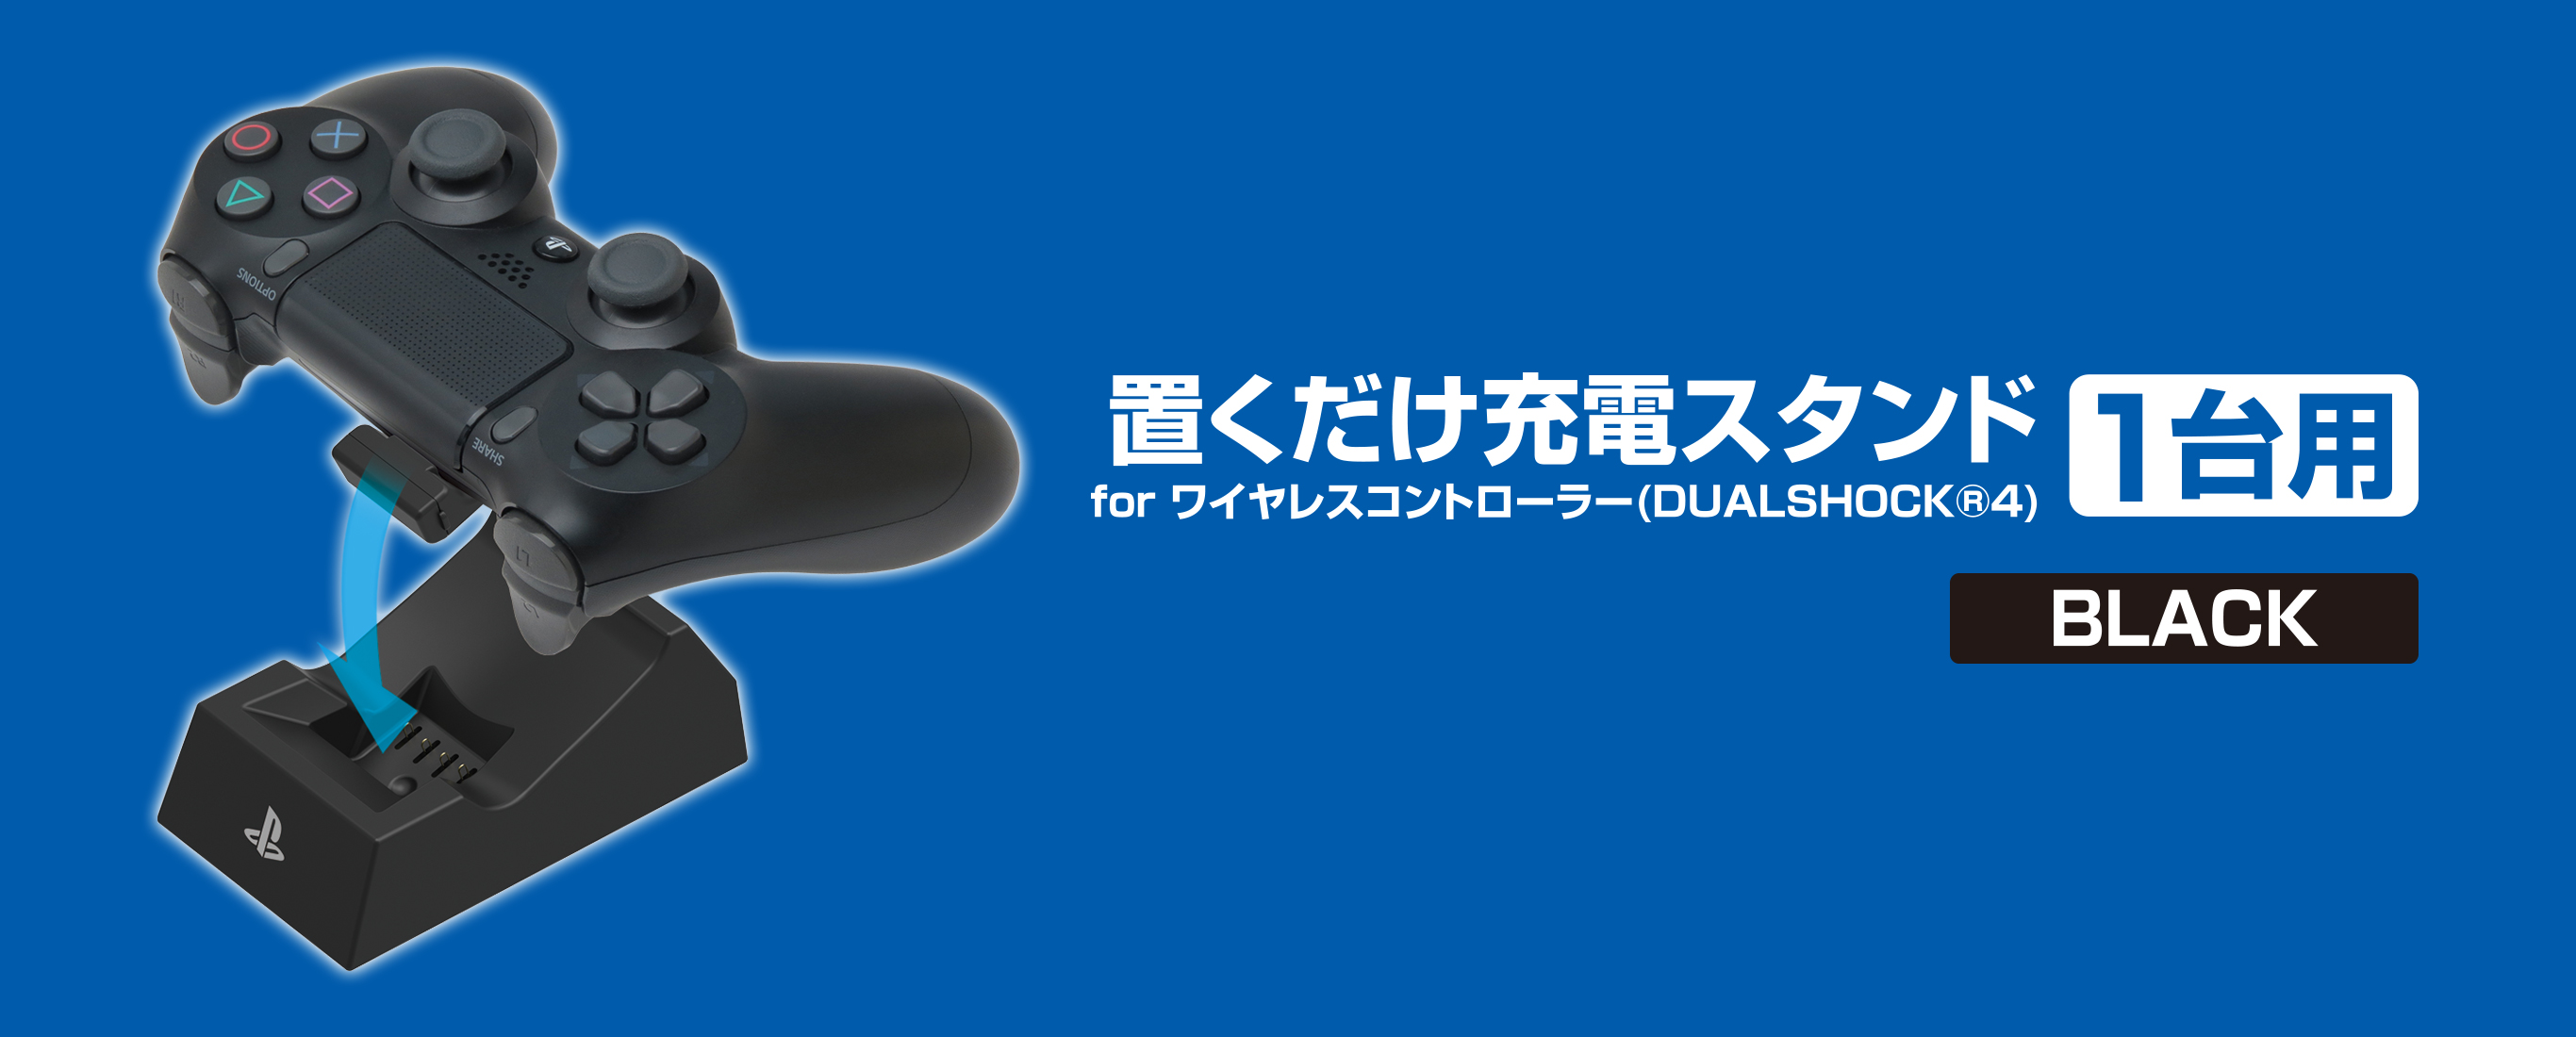 株式会社 HORI | 置くだけ充電スタンド 1台用 for ワイヤレスコントローラー(DUALSHOCK®4) ブラック